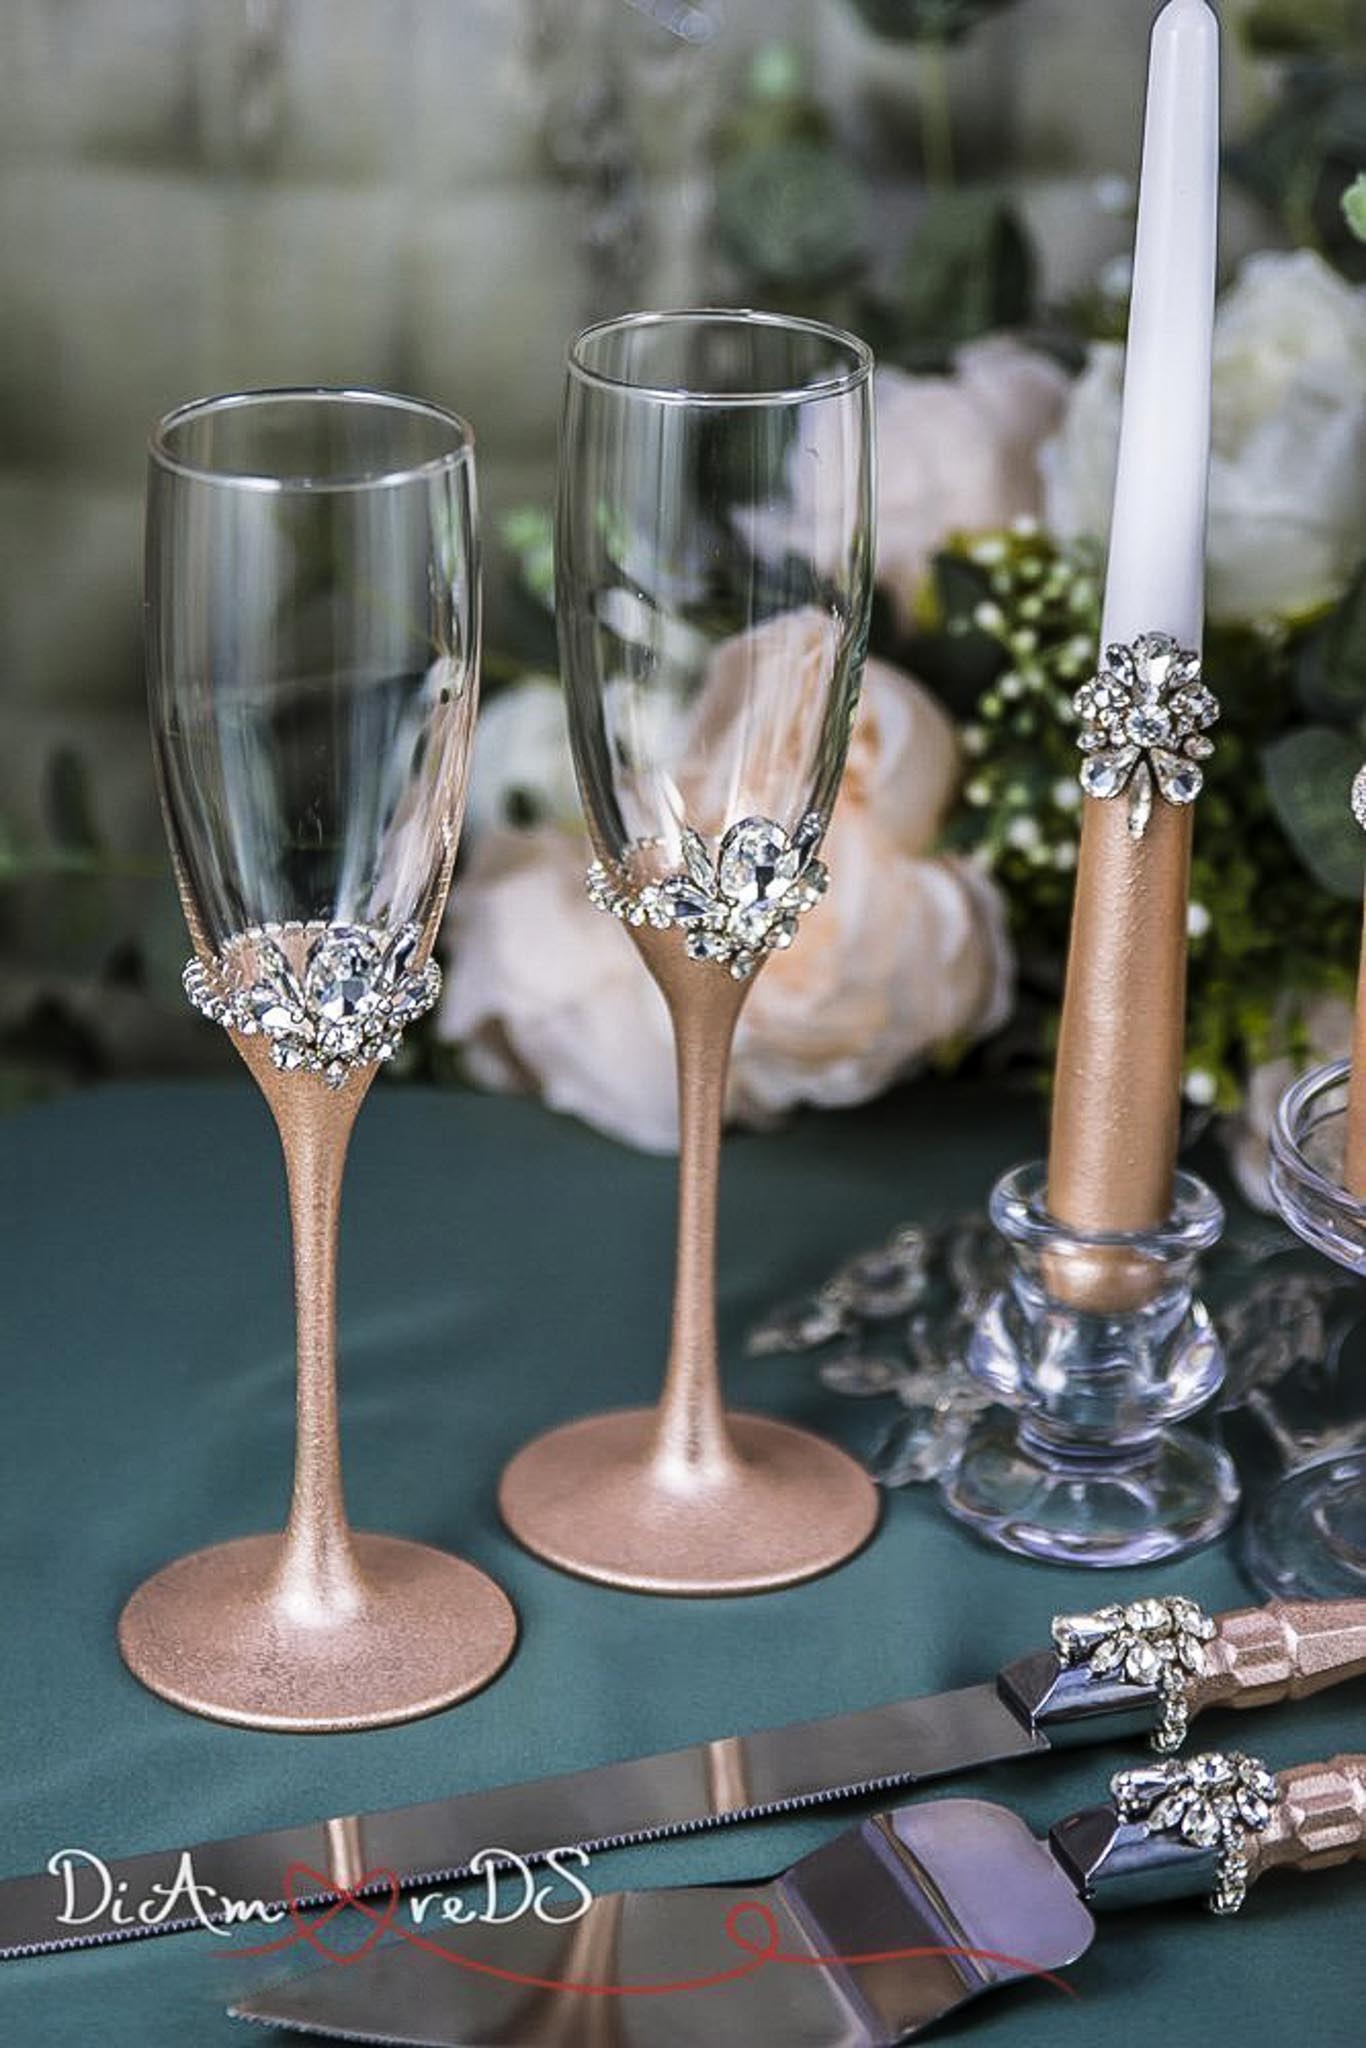 Bride and groom celebration champagne flutes